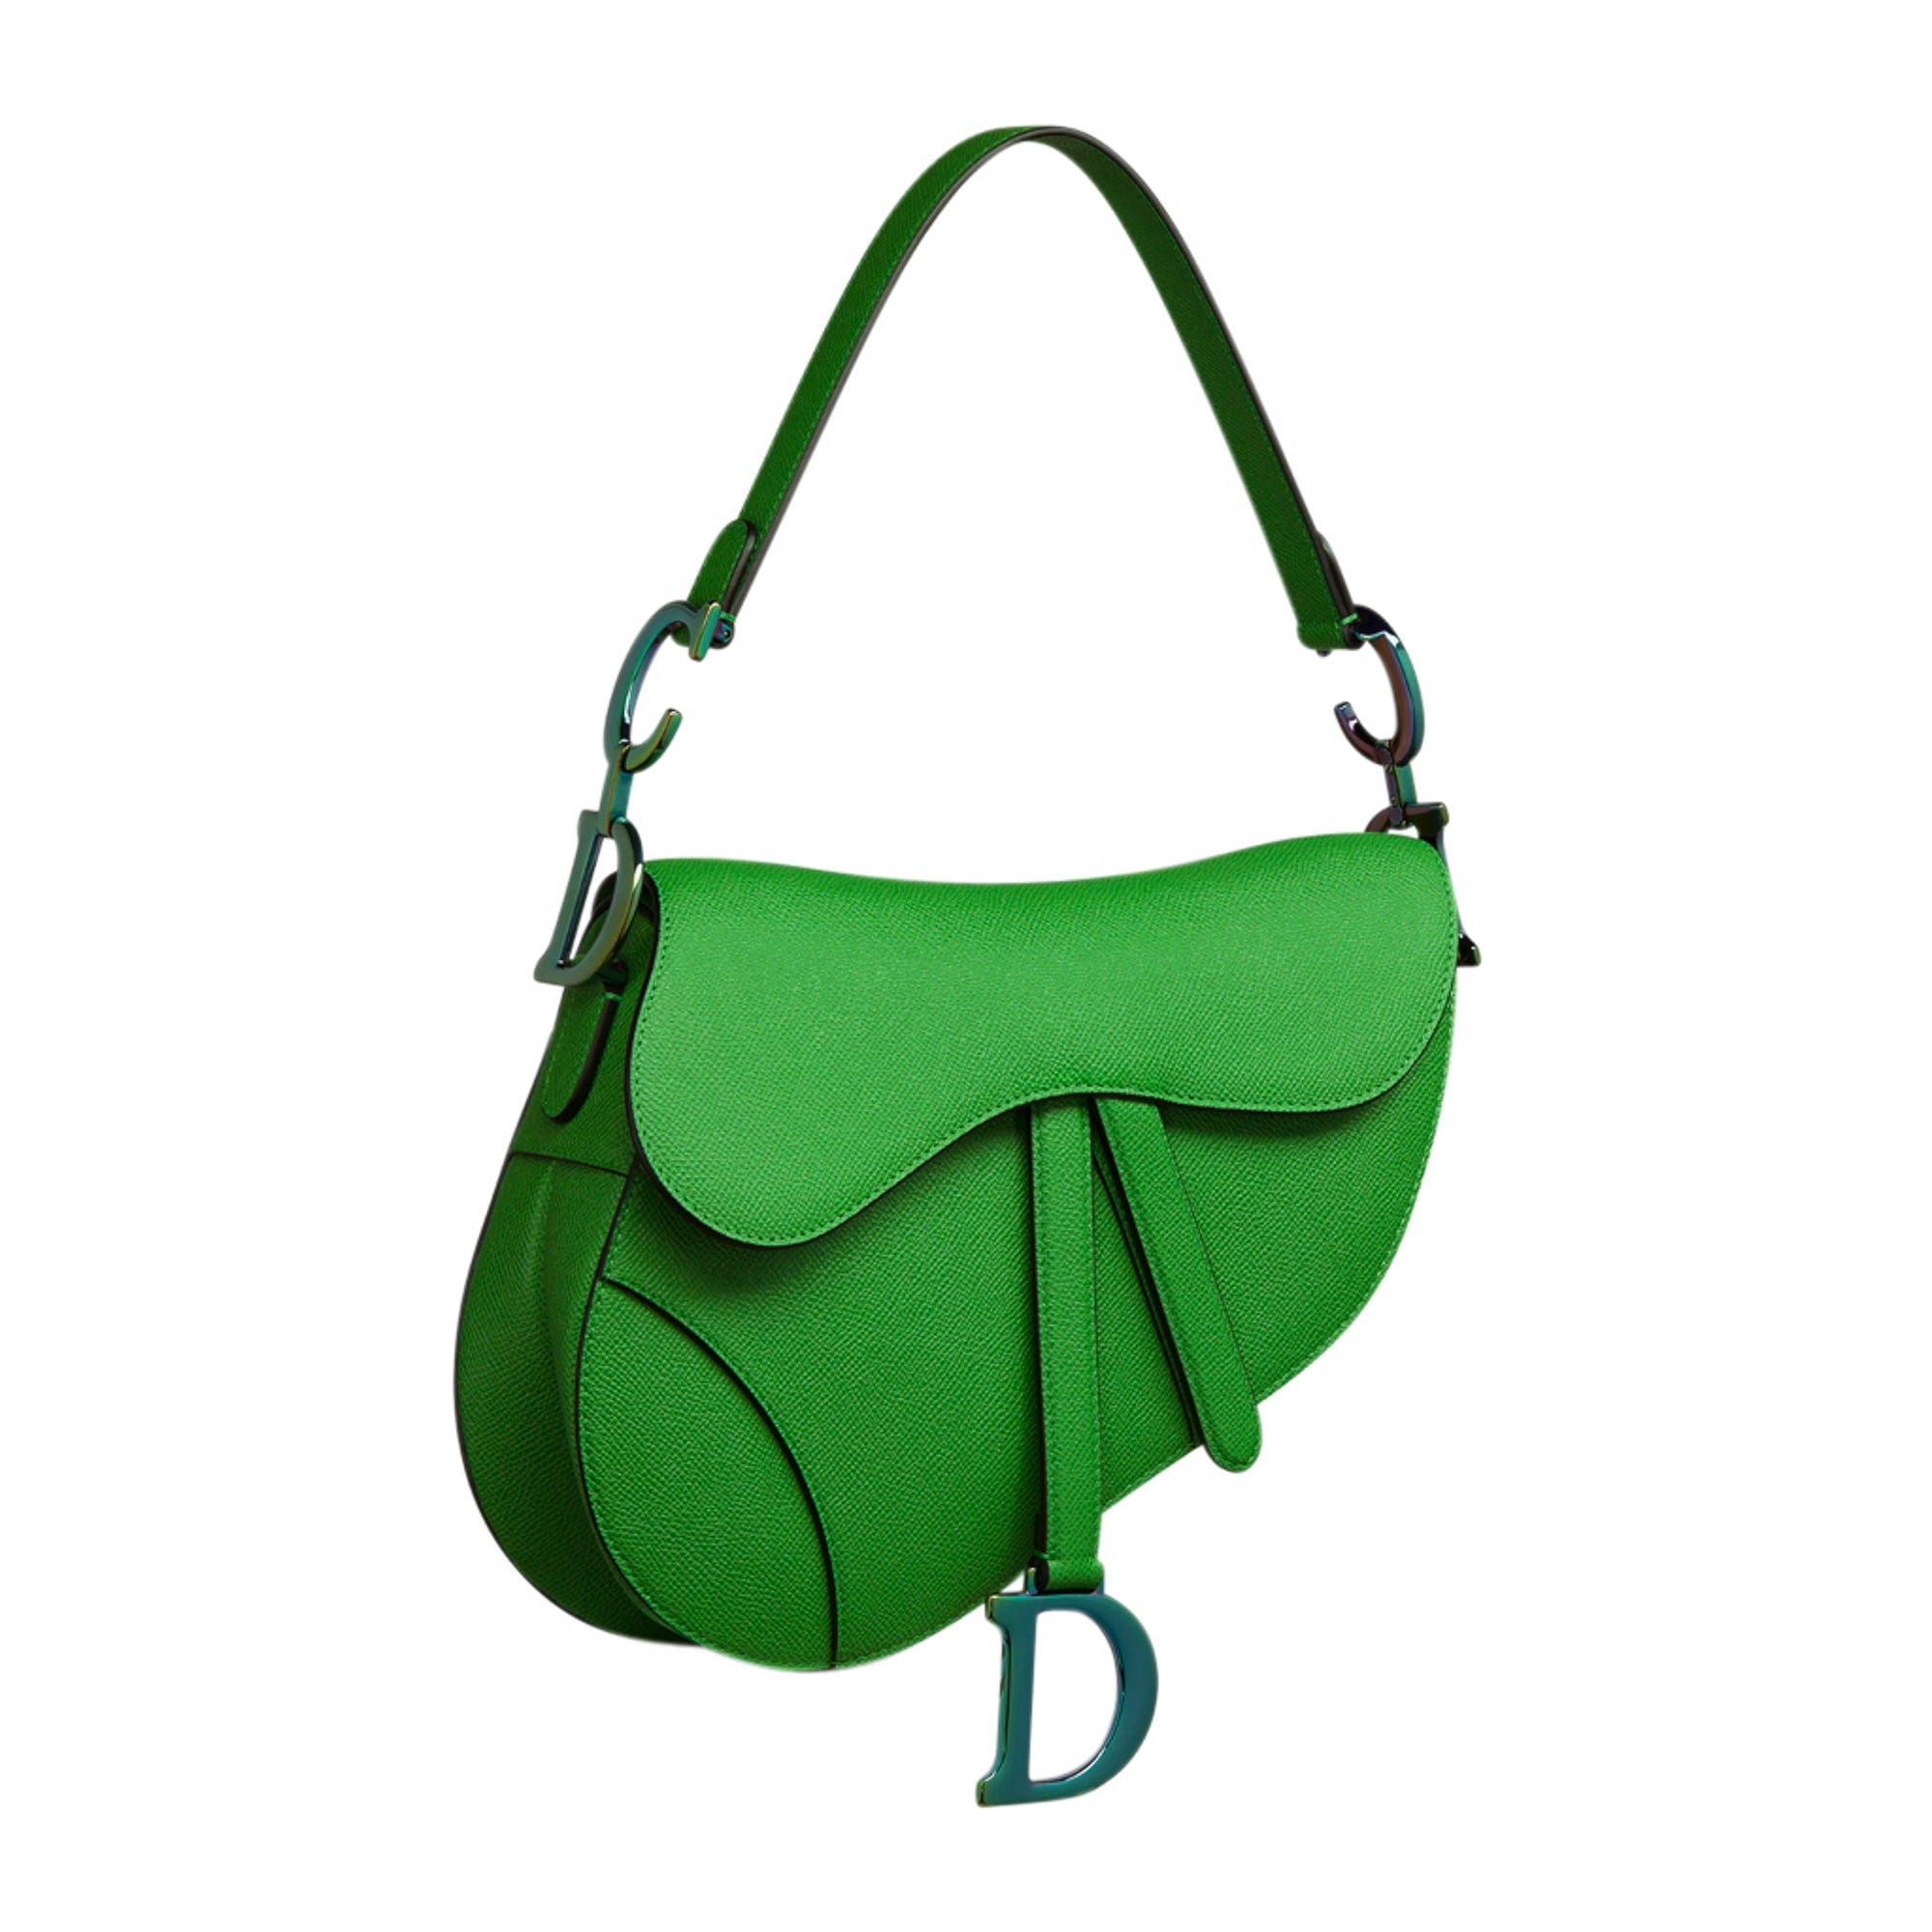 Dior saddle bag  Dior saddle bag, Suede handbags, Vintage dior